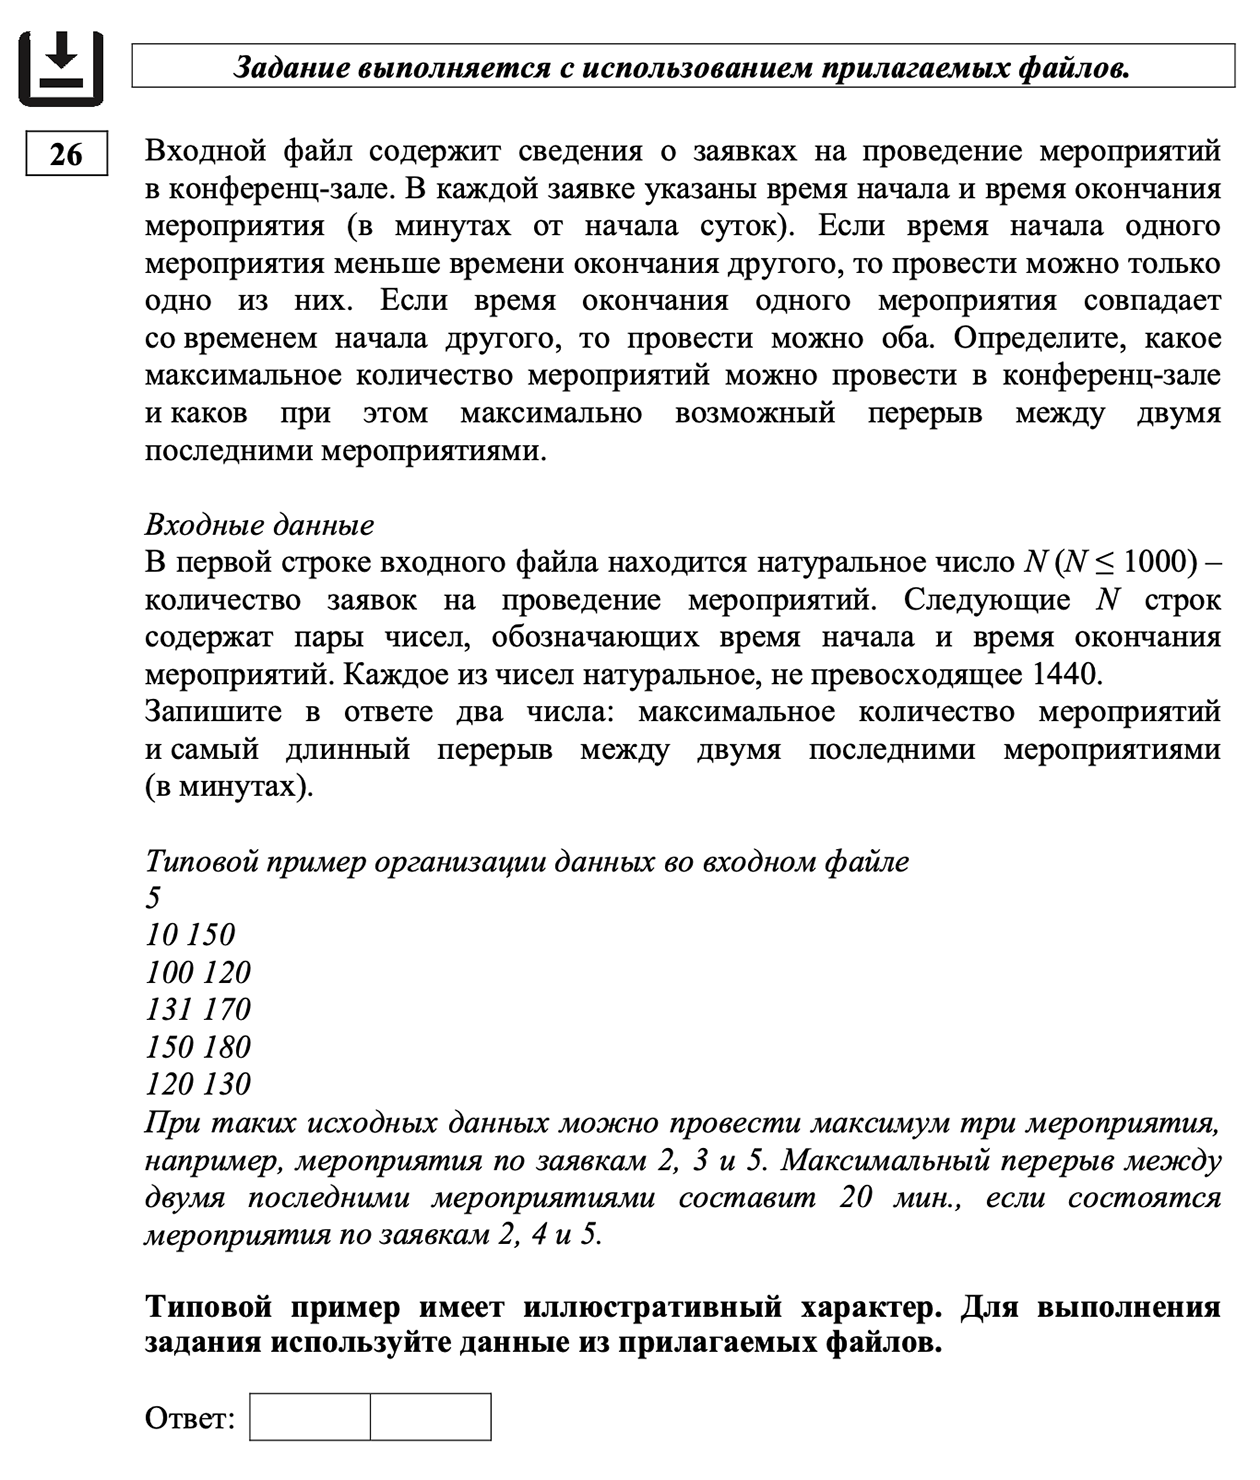 Трудное задание 26, в котором проверяют умение обрабатывать информацию с использованием сортировки. Источник: fipi.ru